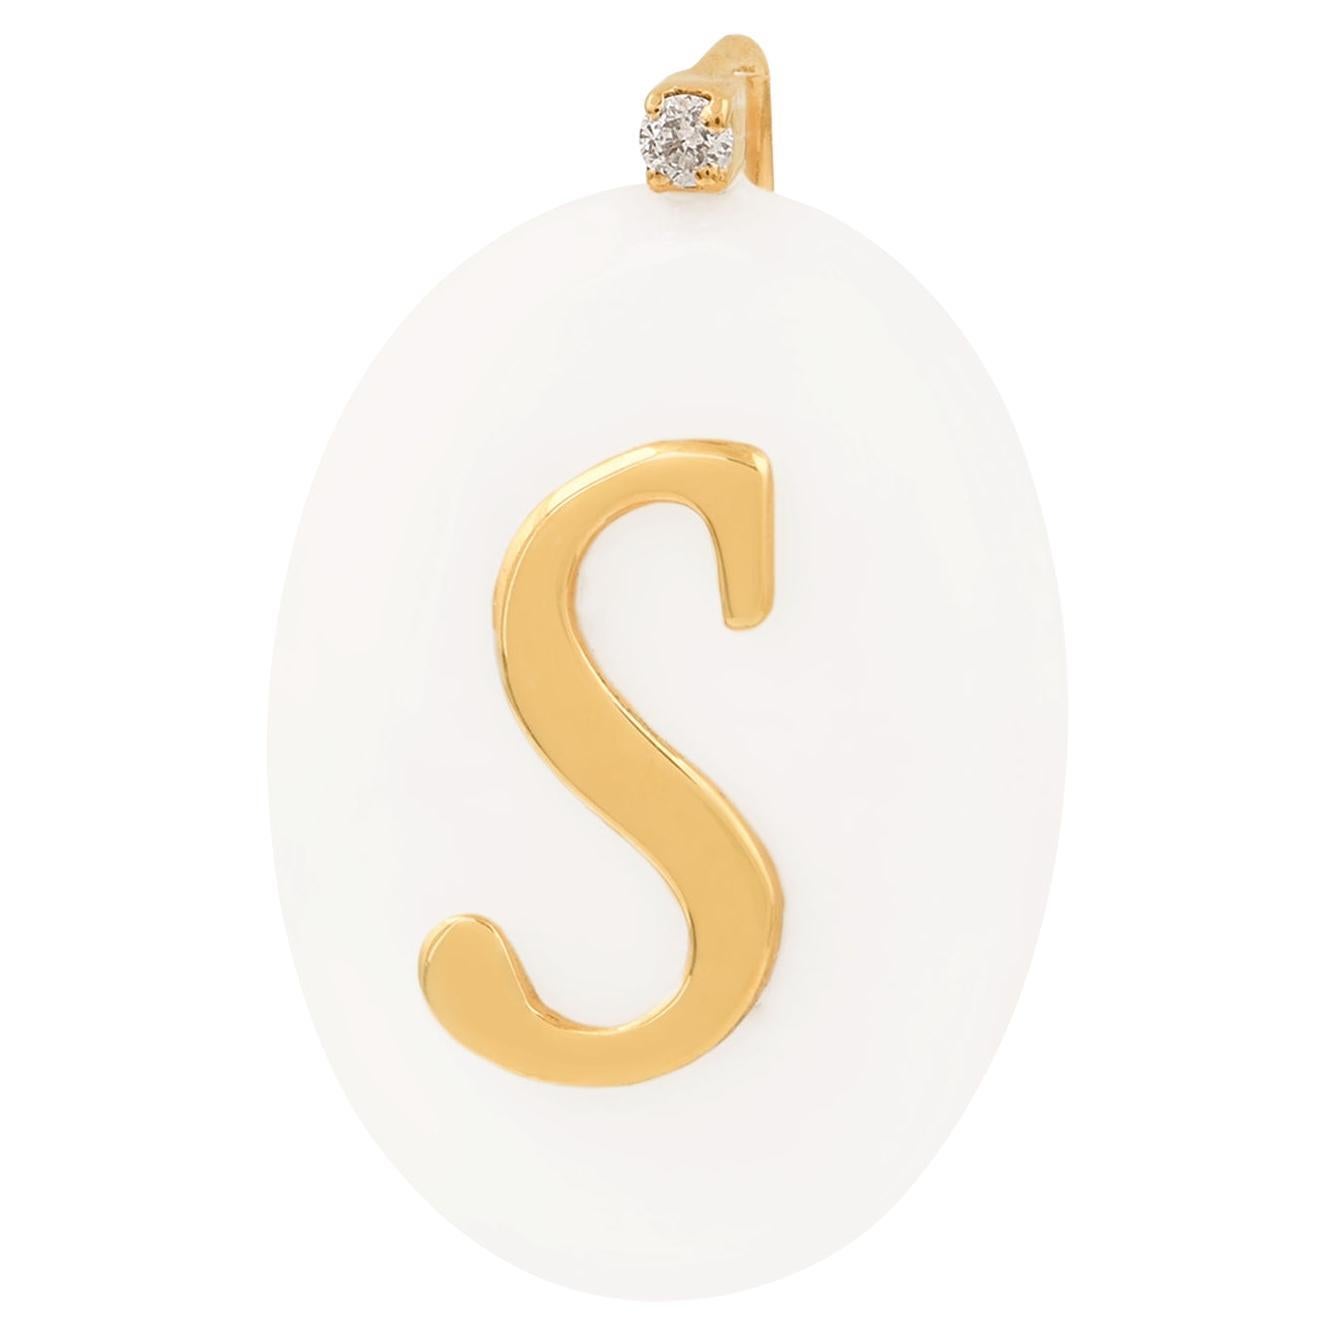 Ovaler Perlen-Edelstein-Initial-S-Charm-Anhänger aus 18 Karat Gelbgold mit Diamanten